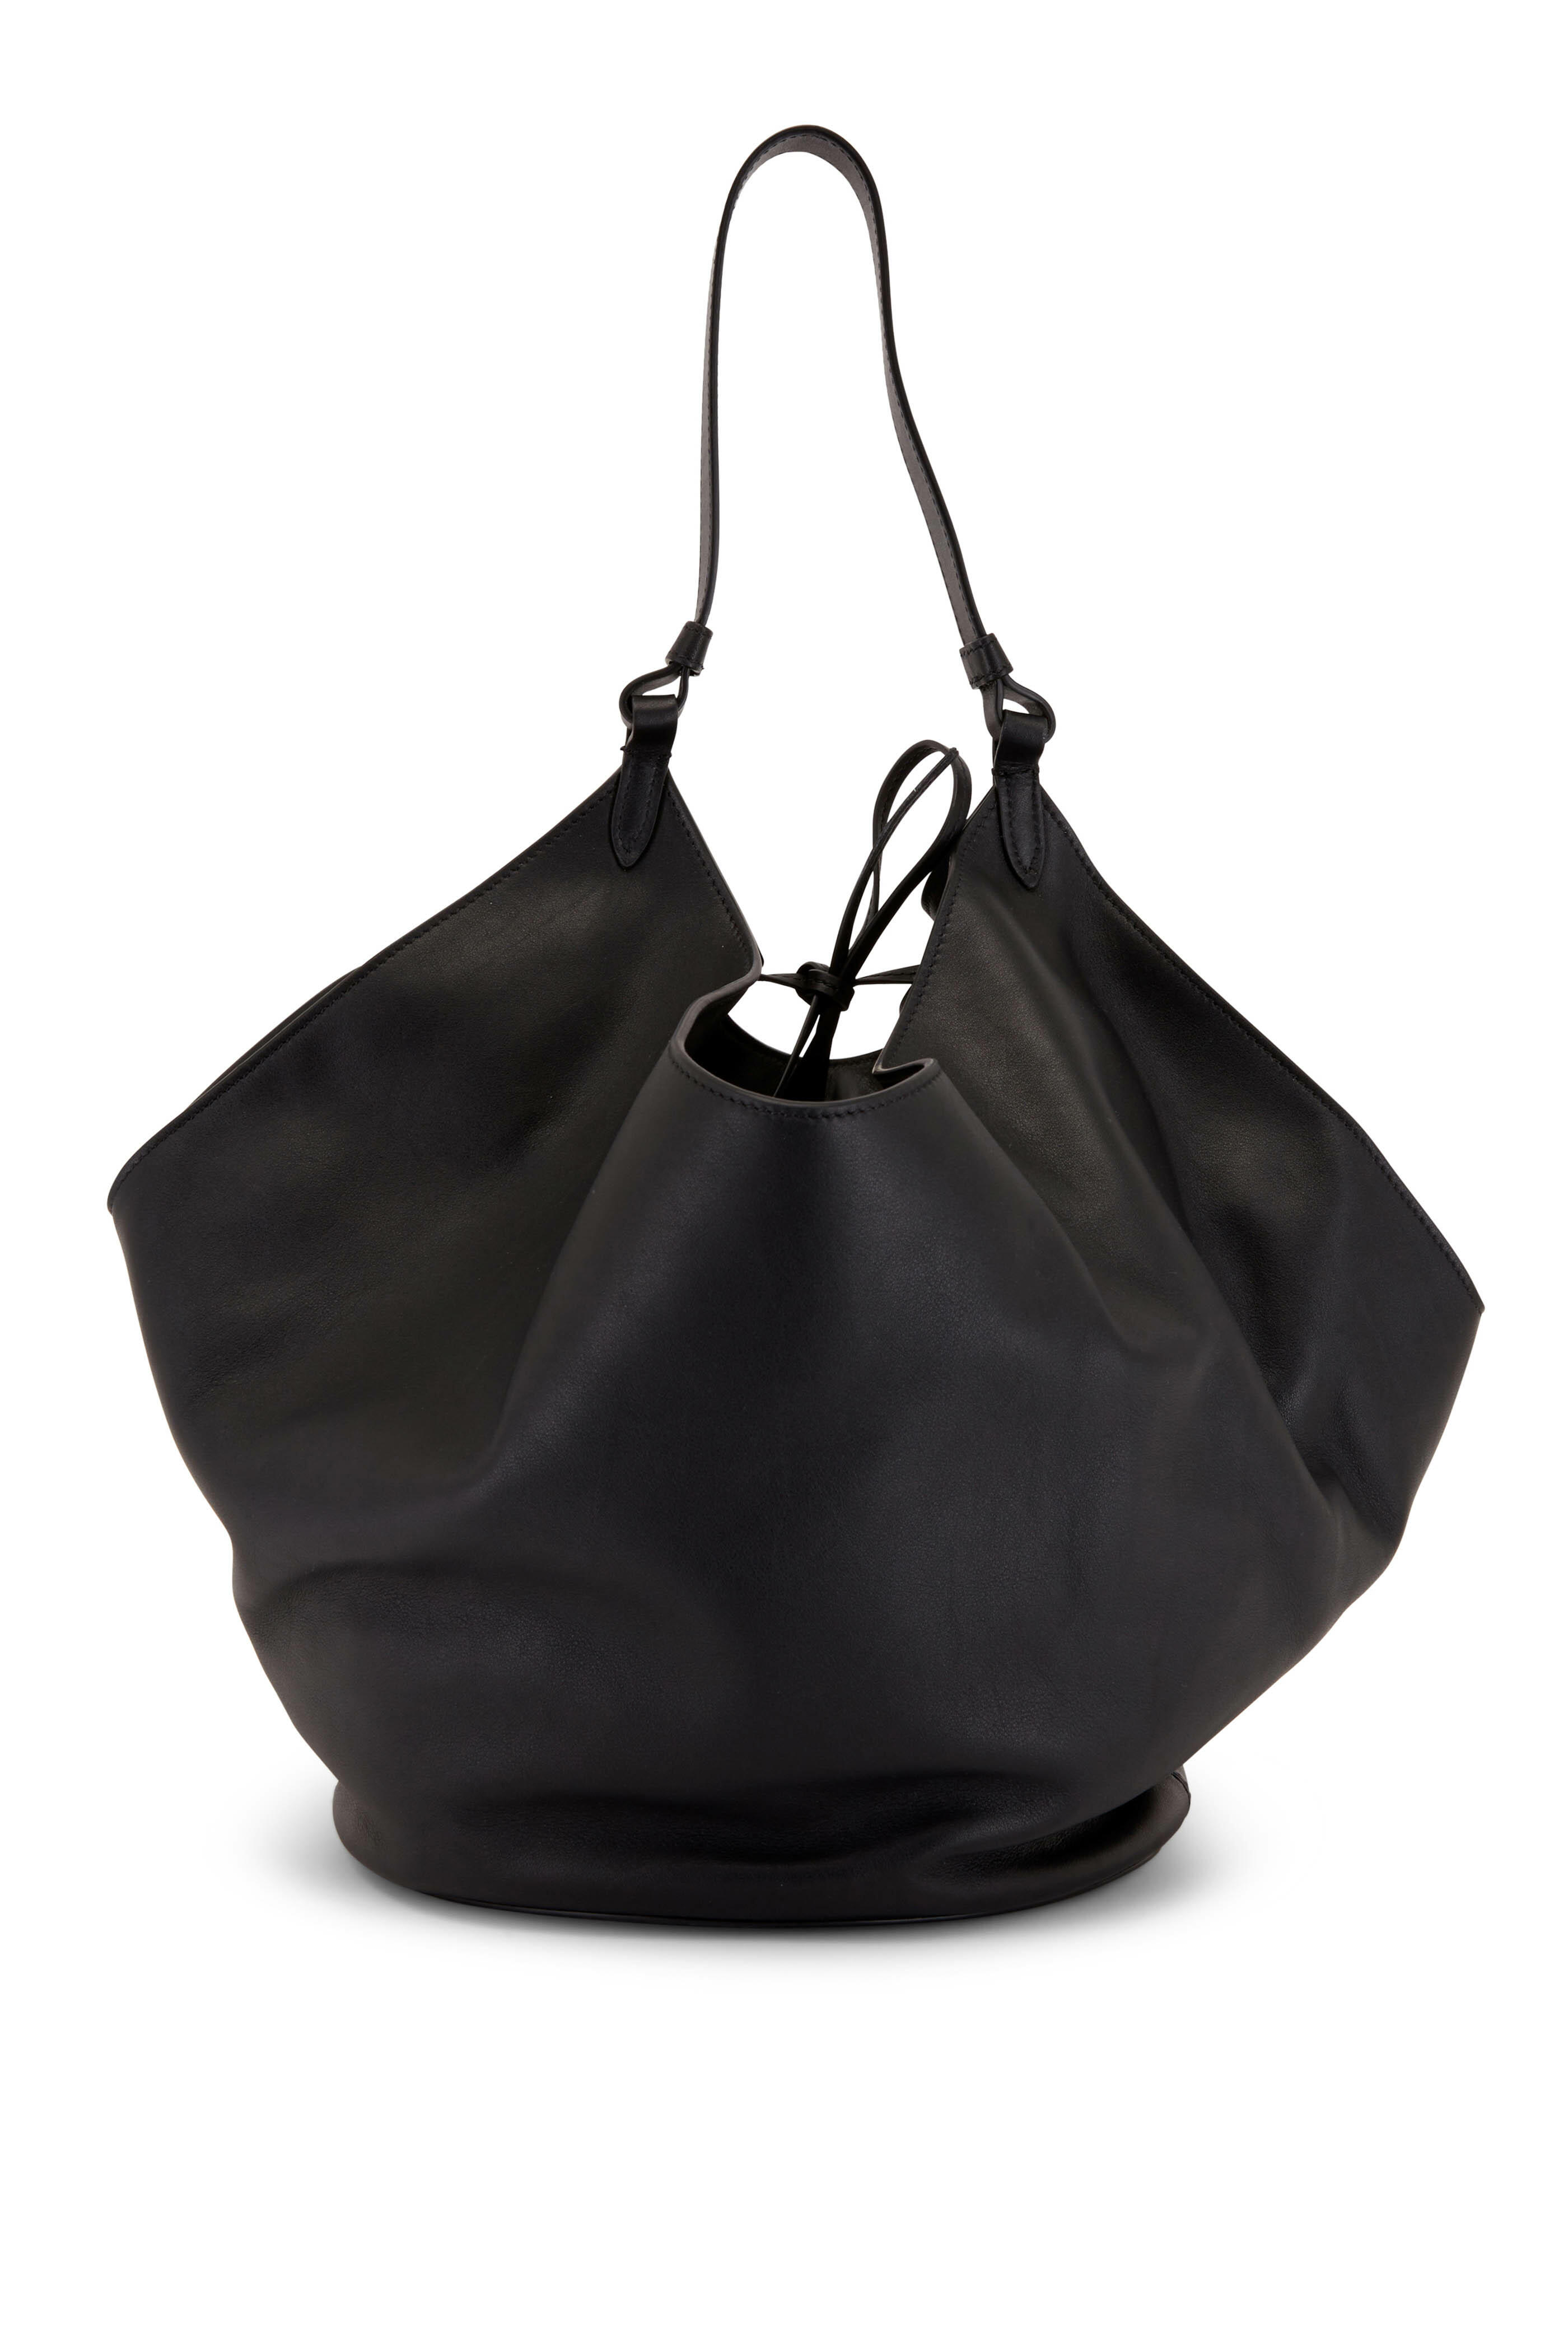 Leather Shoulder Bag With Clutch Set Ladybuq Office Bag Black 